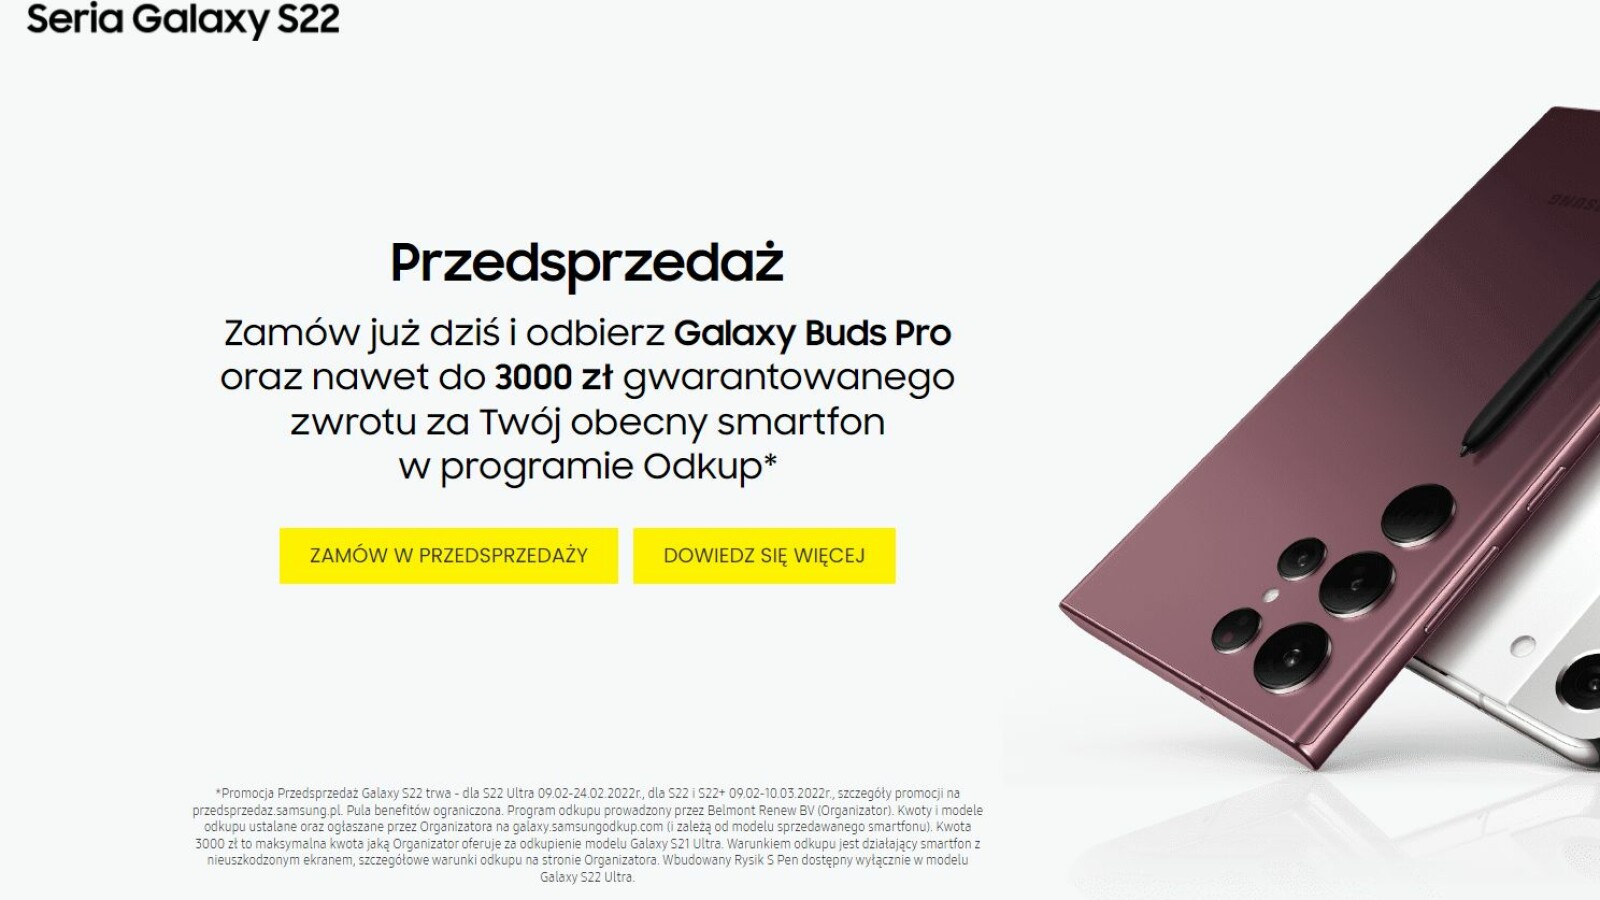 Galaxy S22: polski detalista zdradza, że ​​te bonusy są przyznawane za zamówienia w przedsprzedaży od Samsunga